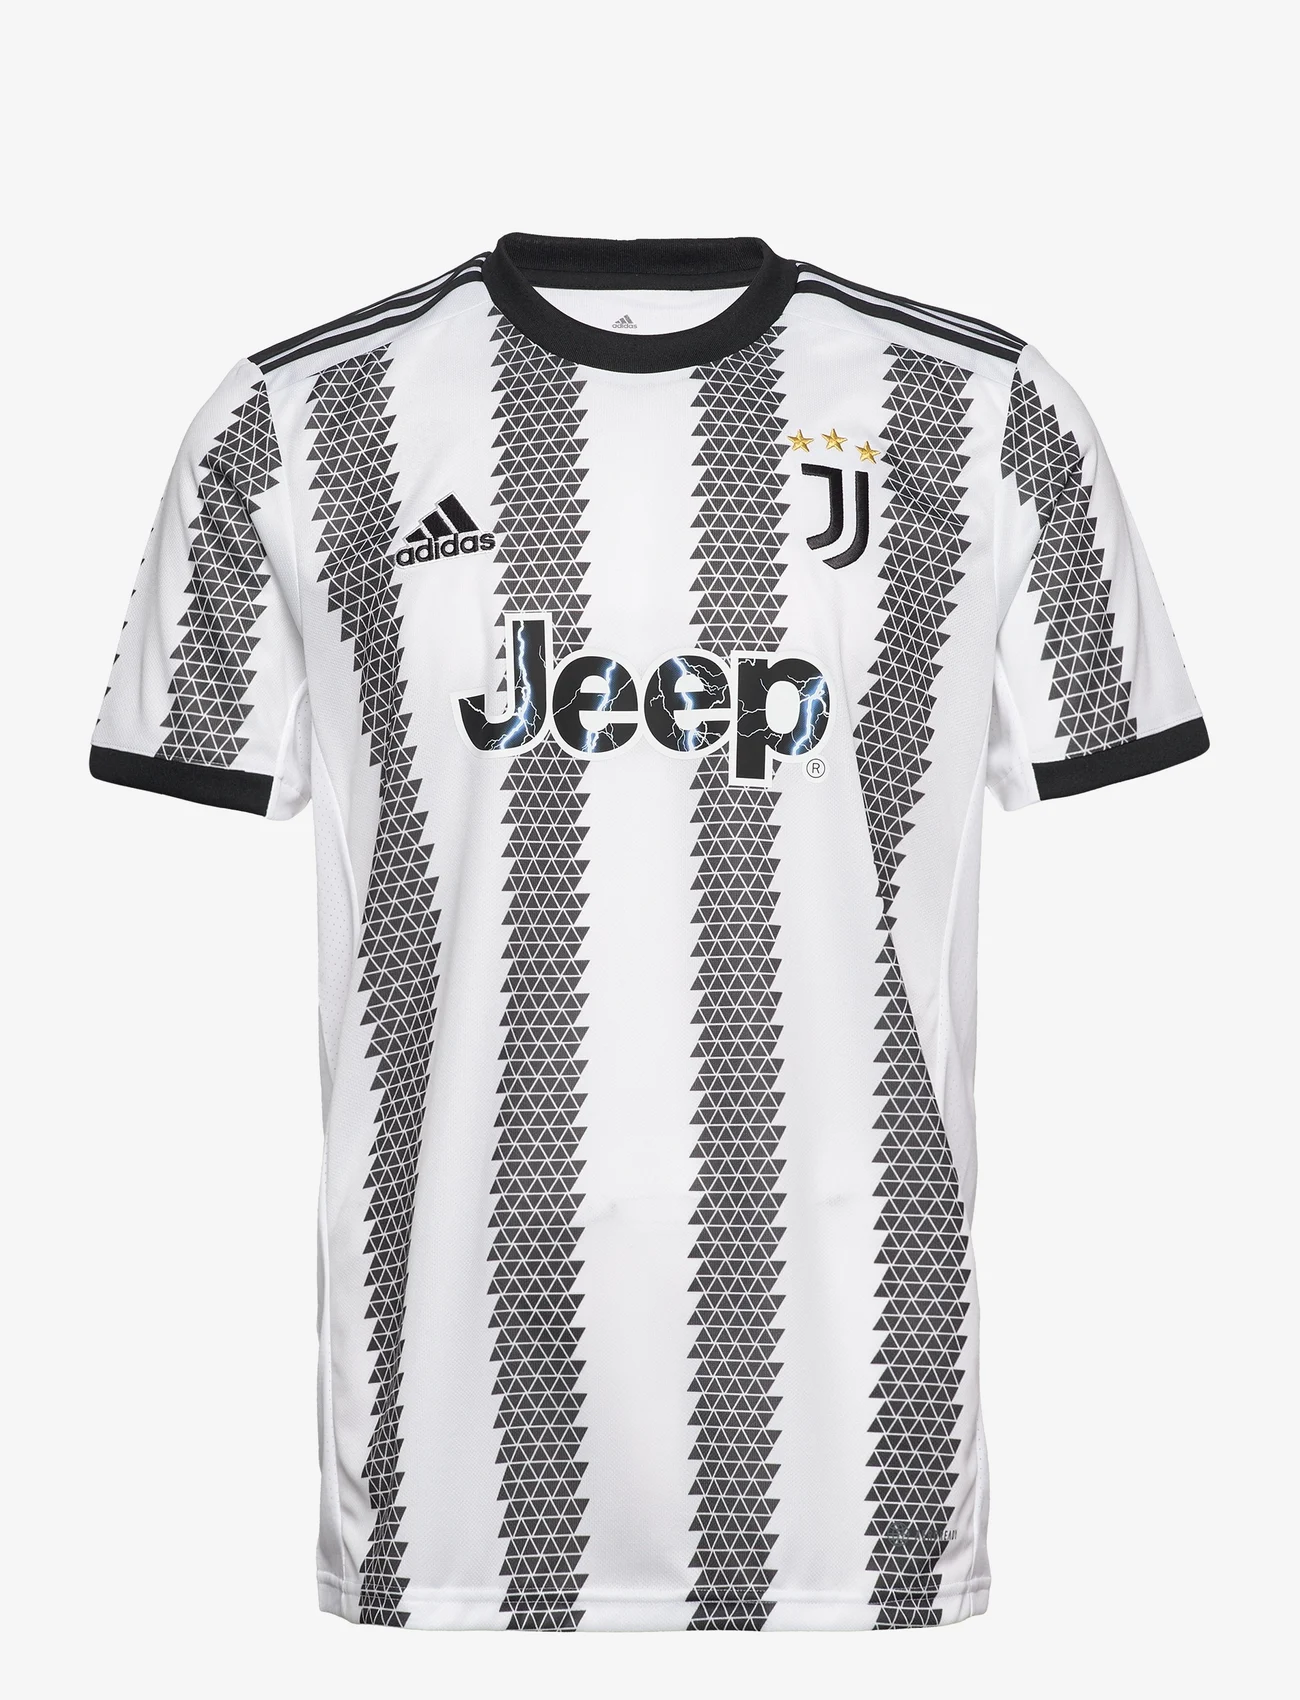 adidas Performance - Juventus 22/23 Home Jersey - fußballoberteile - white/black - 1